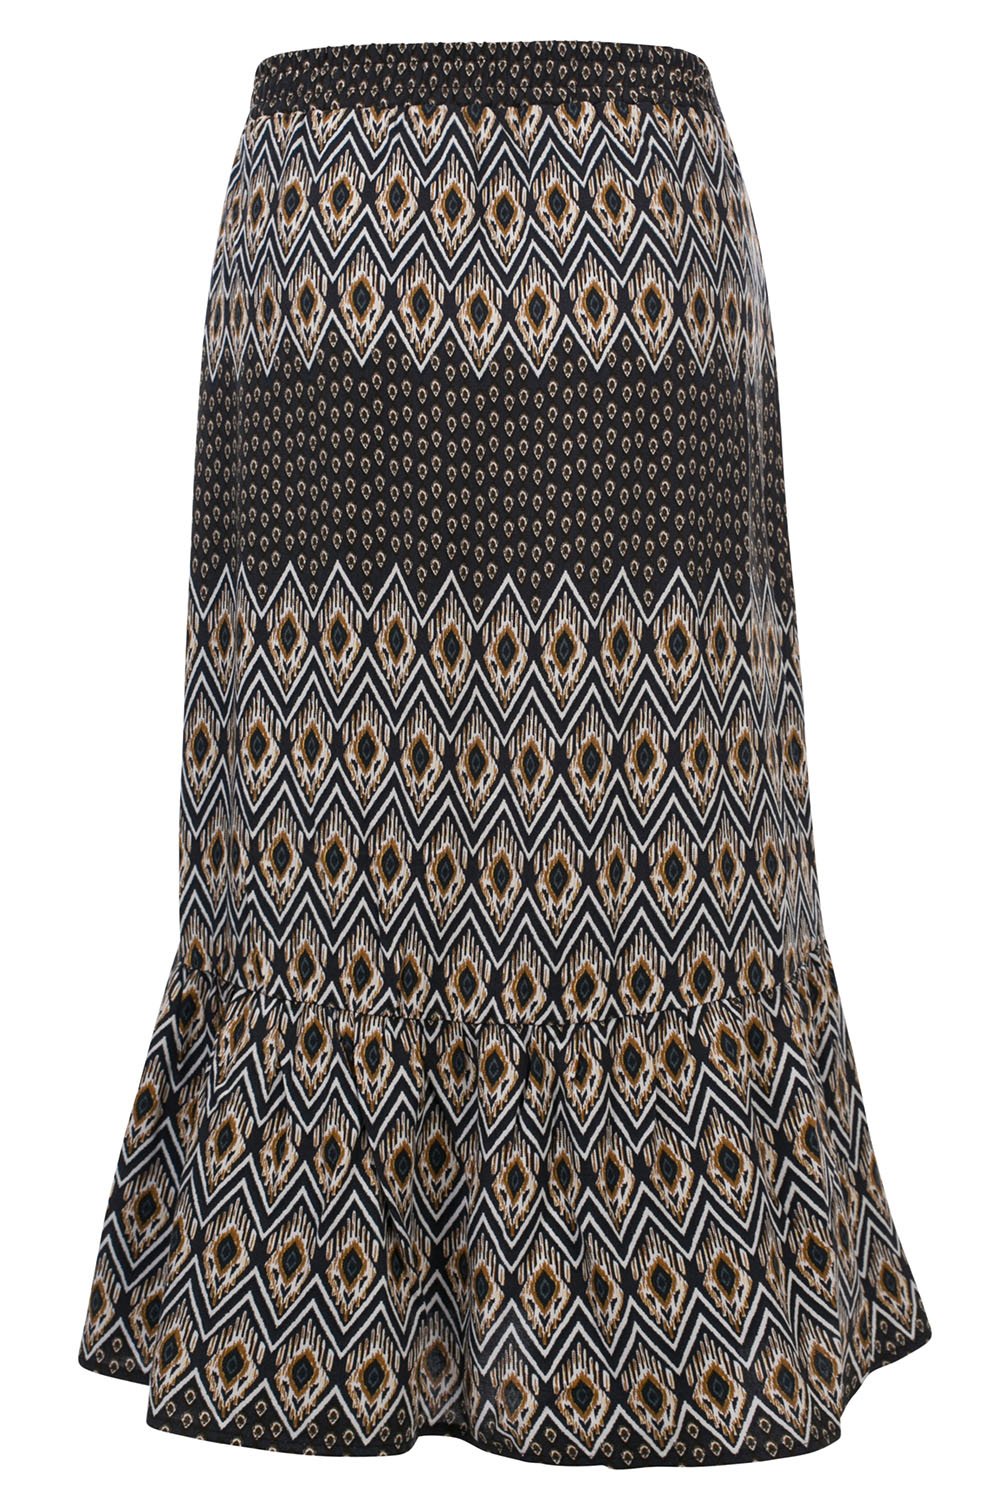 Meisjes 10Sixteen Native printed Long skirt van LOOXS 10sixteen in de kleur Native AO in maat 176.